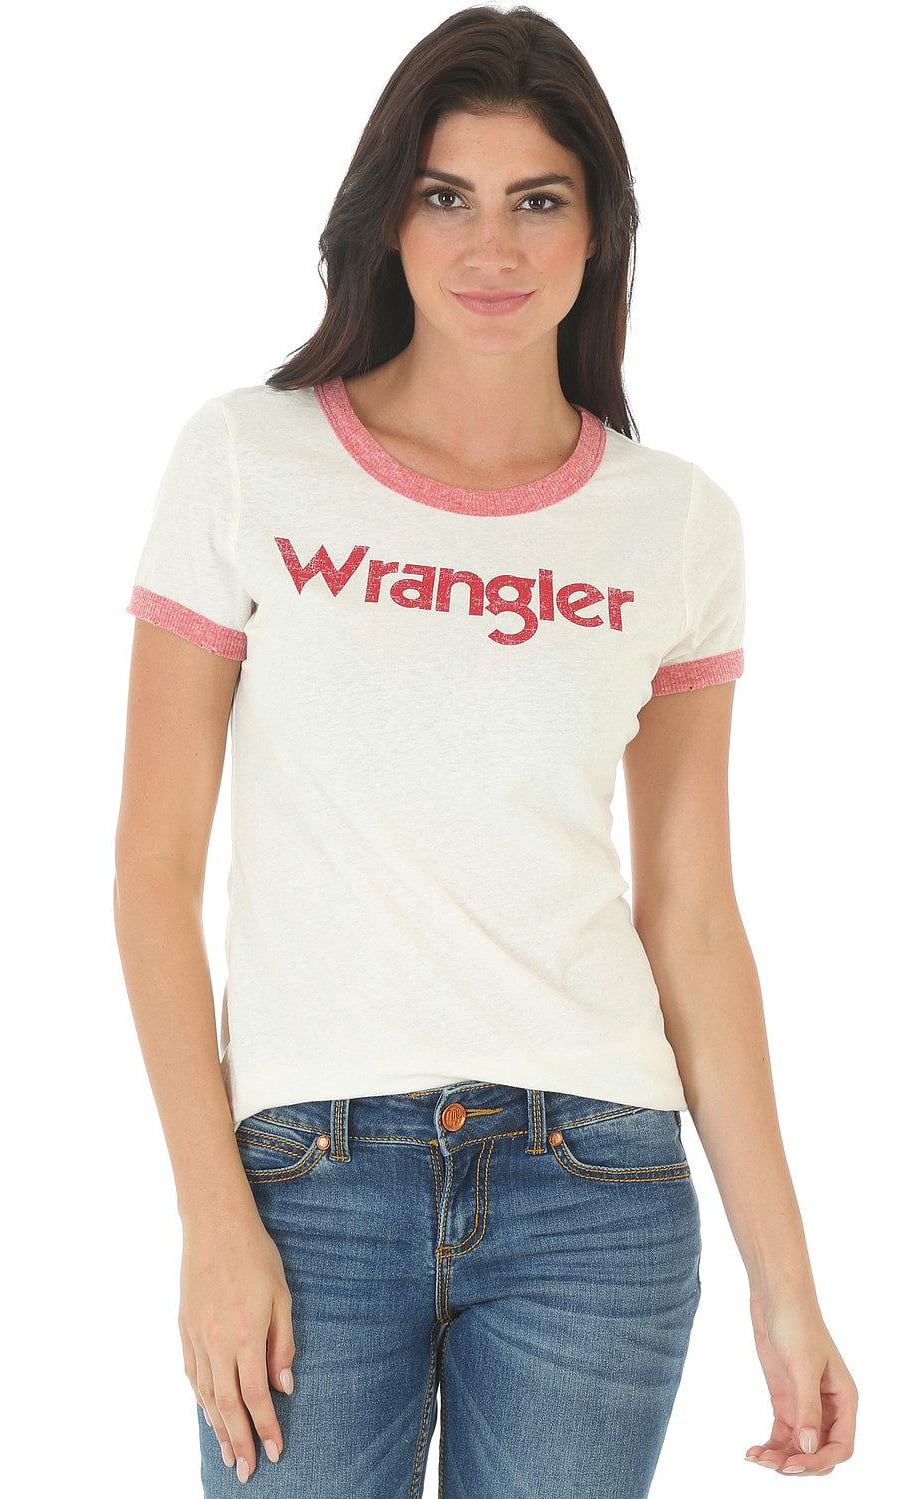 Wrangler - Wrangler Women's White And Ringer T-Shirt - Lwk450w ...